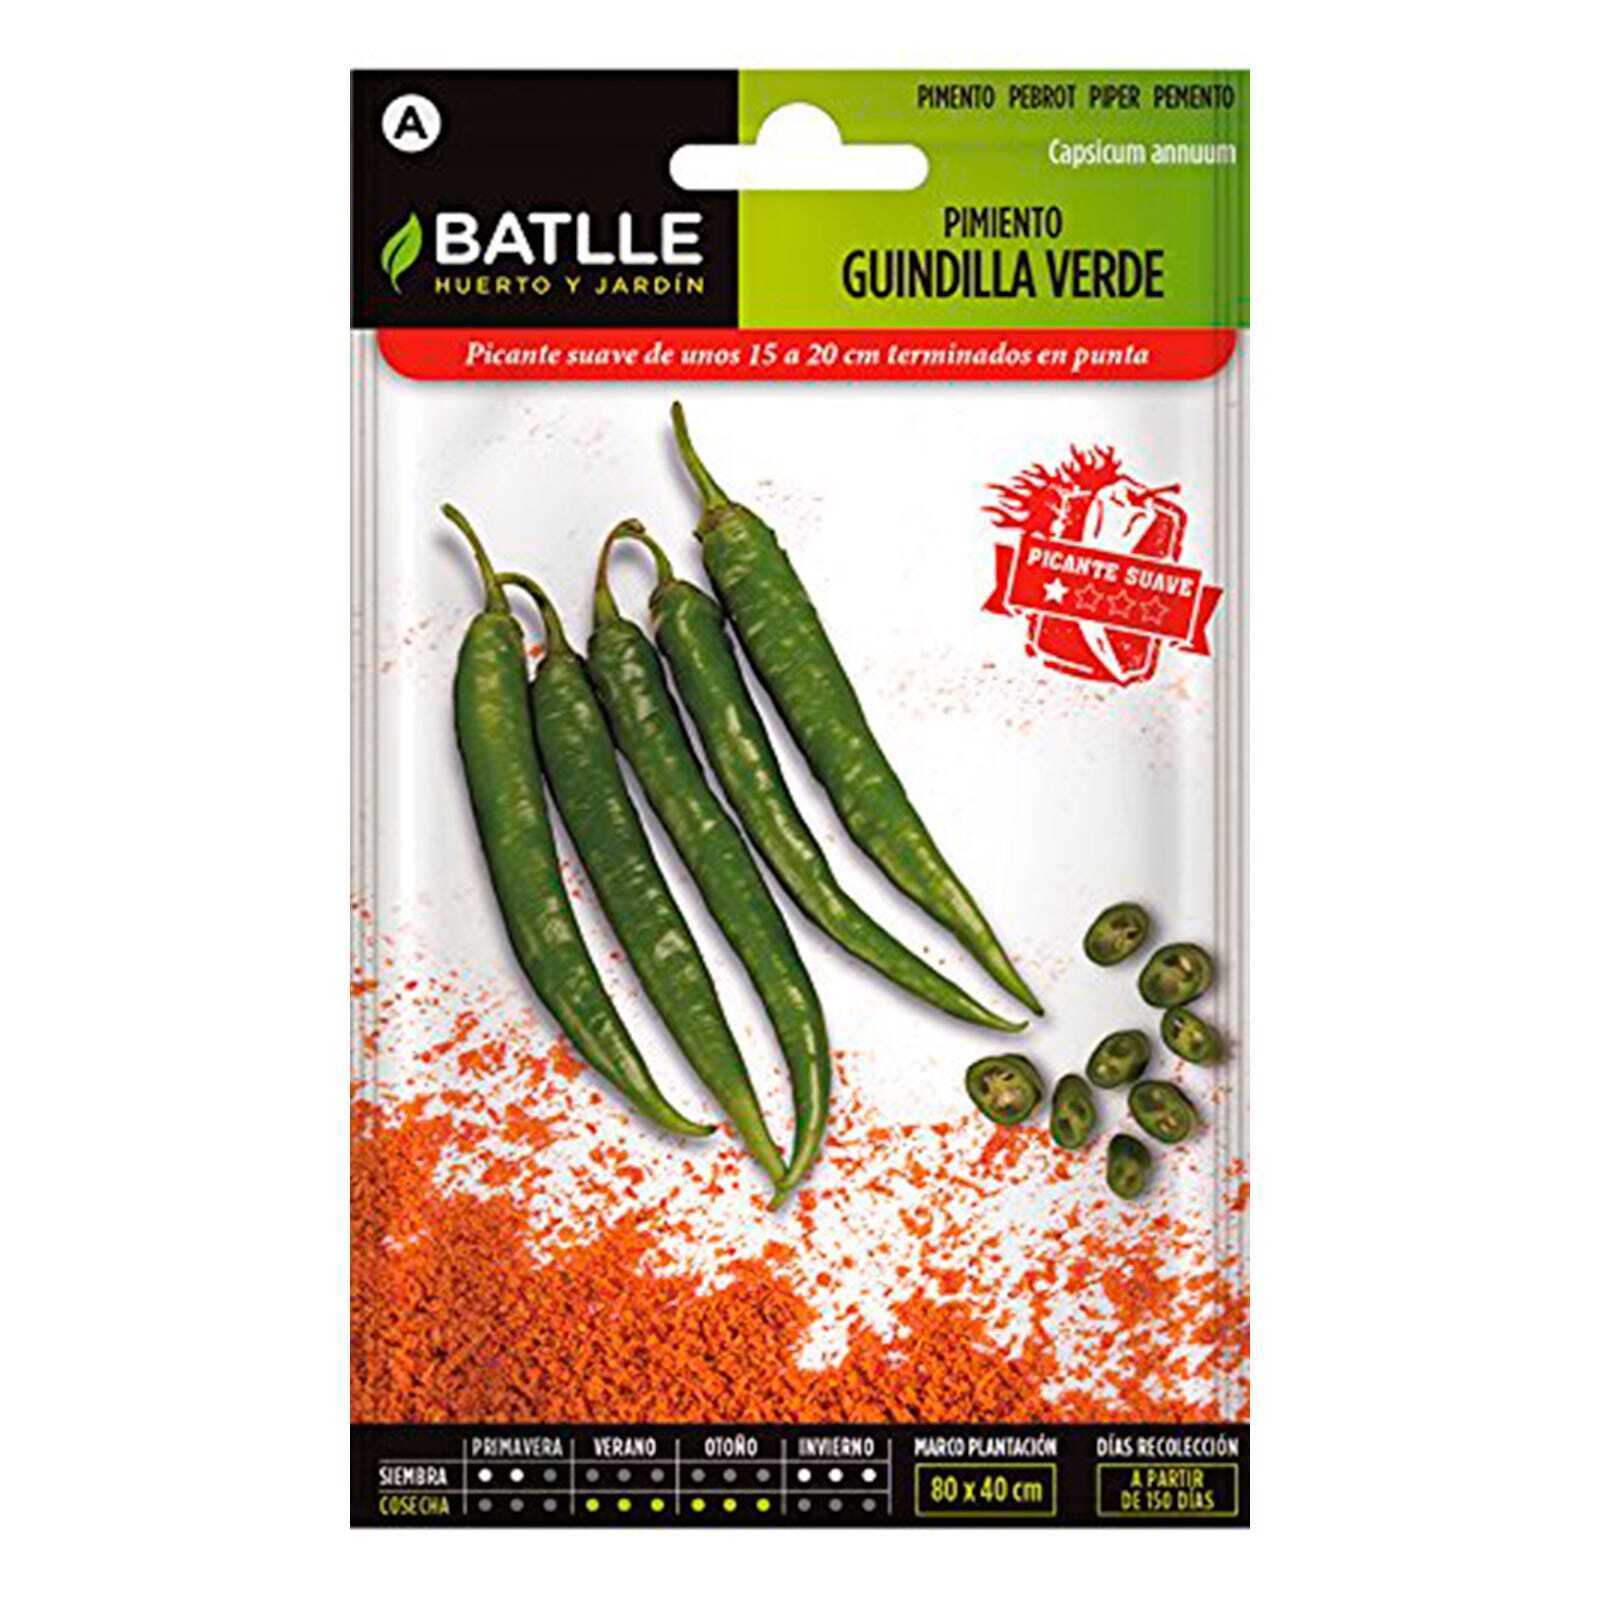 Semillas hortícolas de Batlle - Pimiento Guindilla Verde (2g)